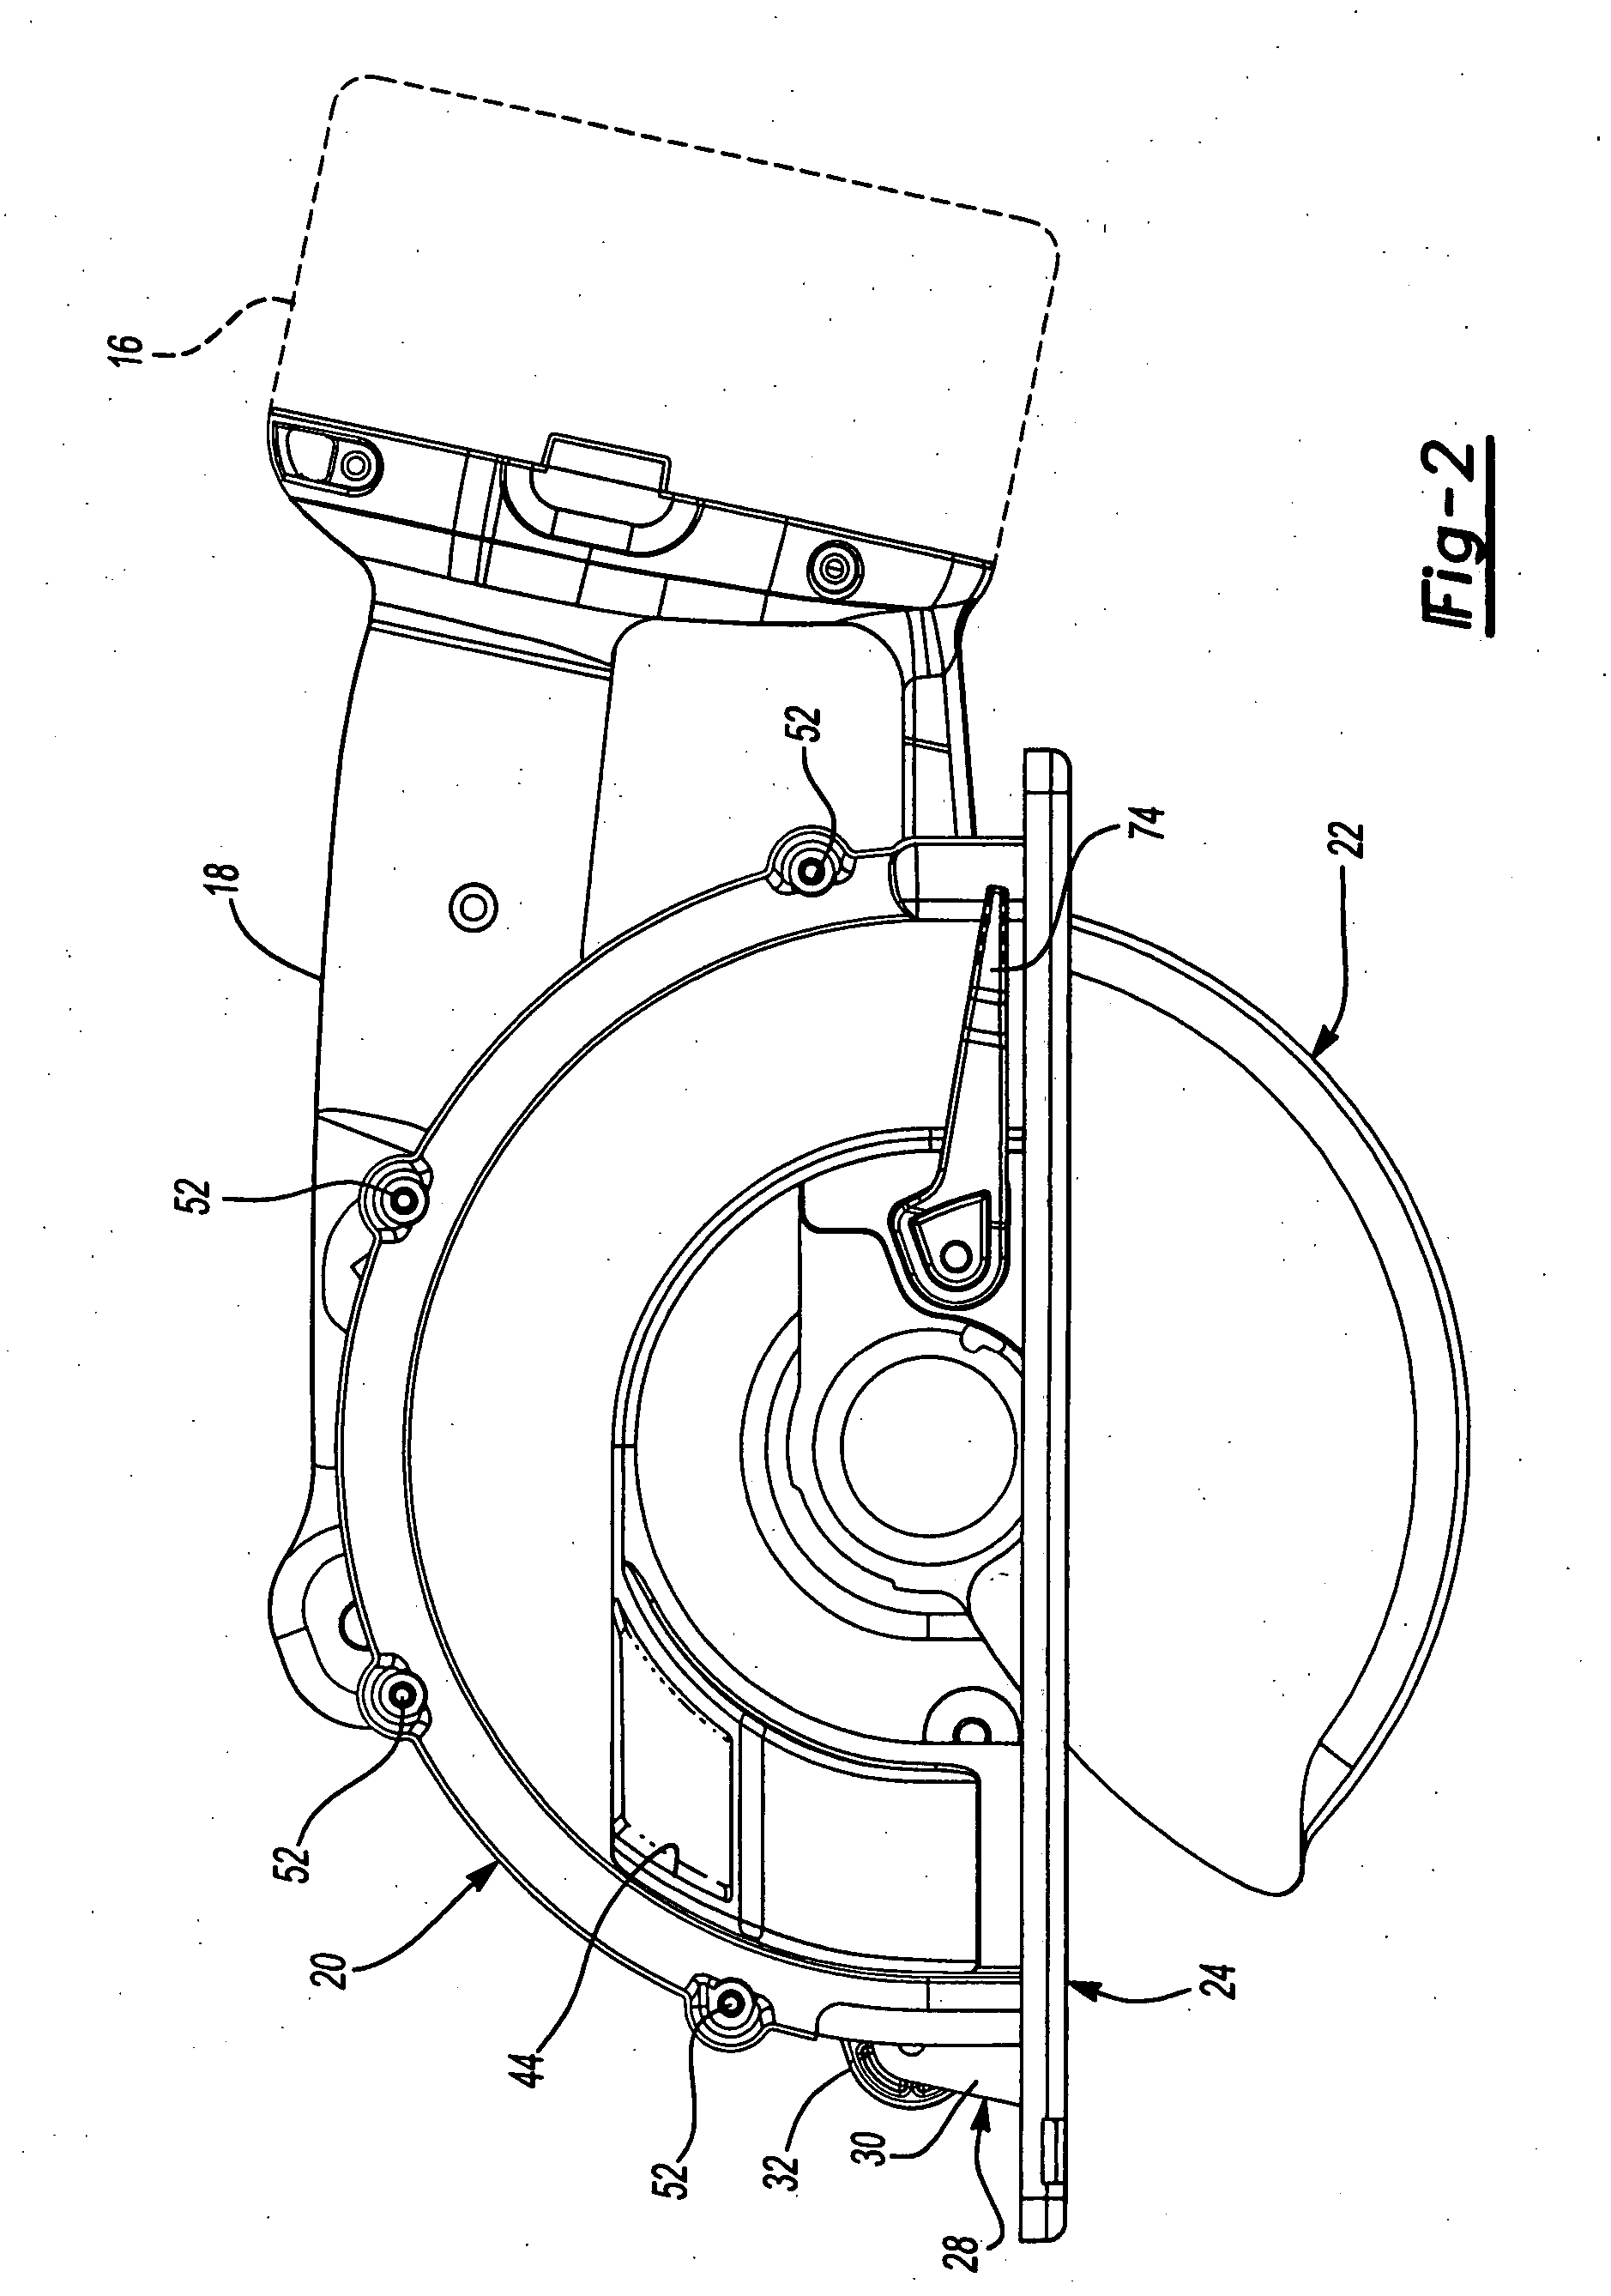 Metal cutting circular saw with integral sight window